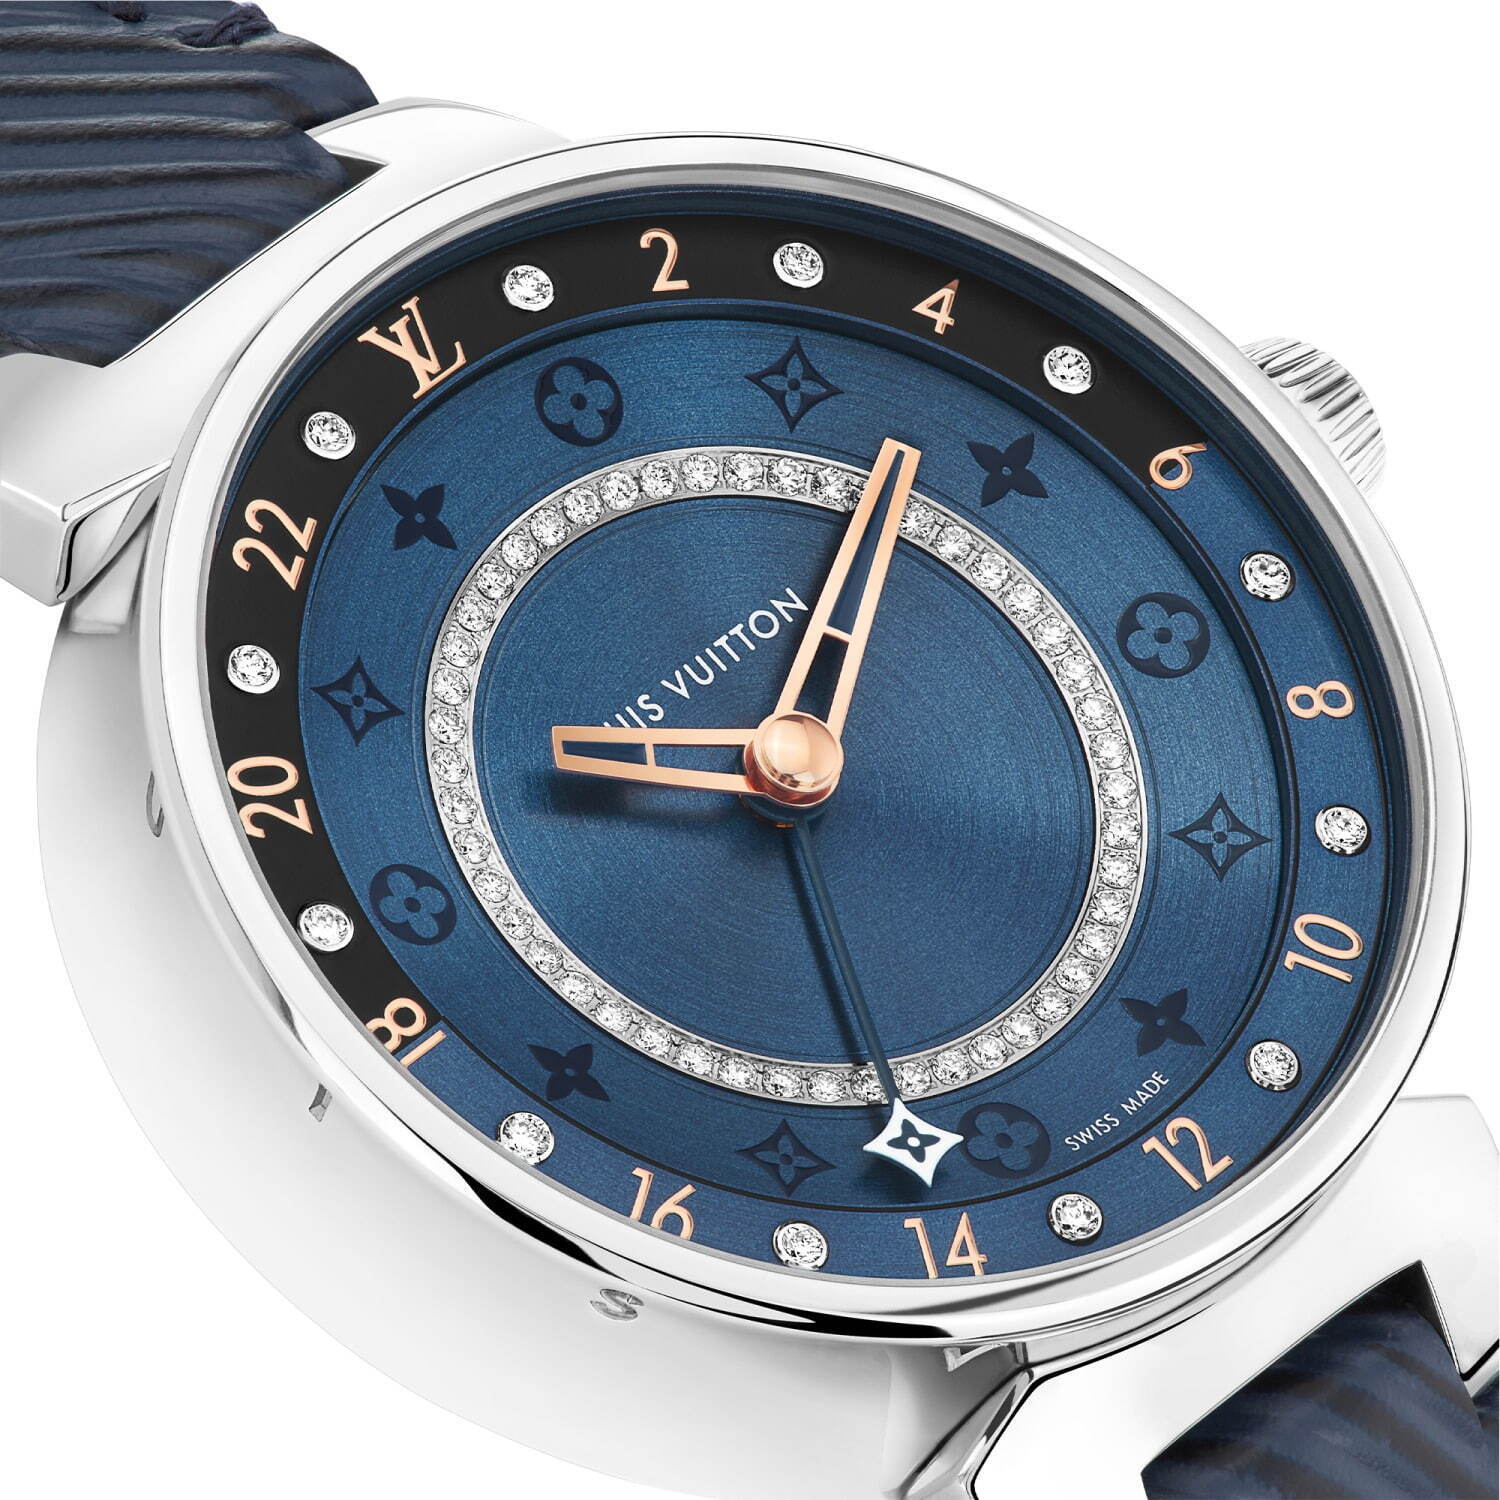 ルイ・ヴィトンの腕時計「タンブール ムーン デュアルタイム」新色 